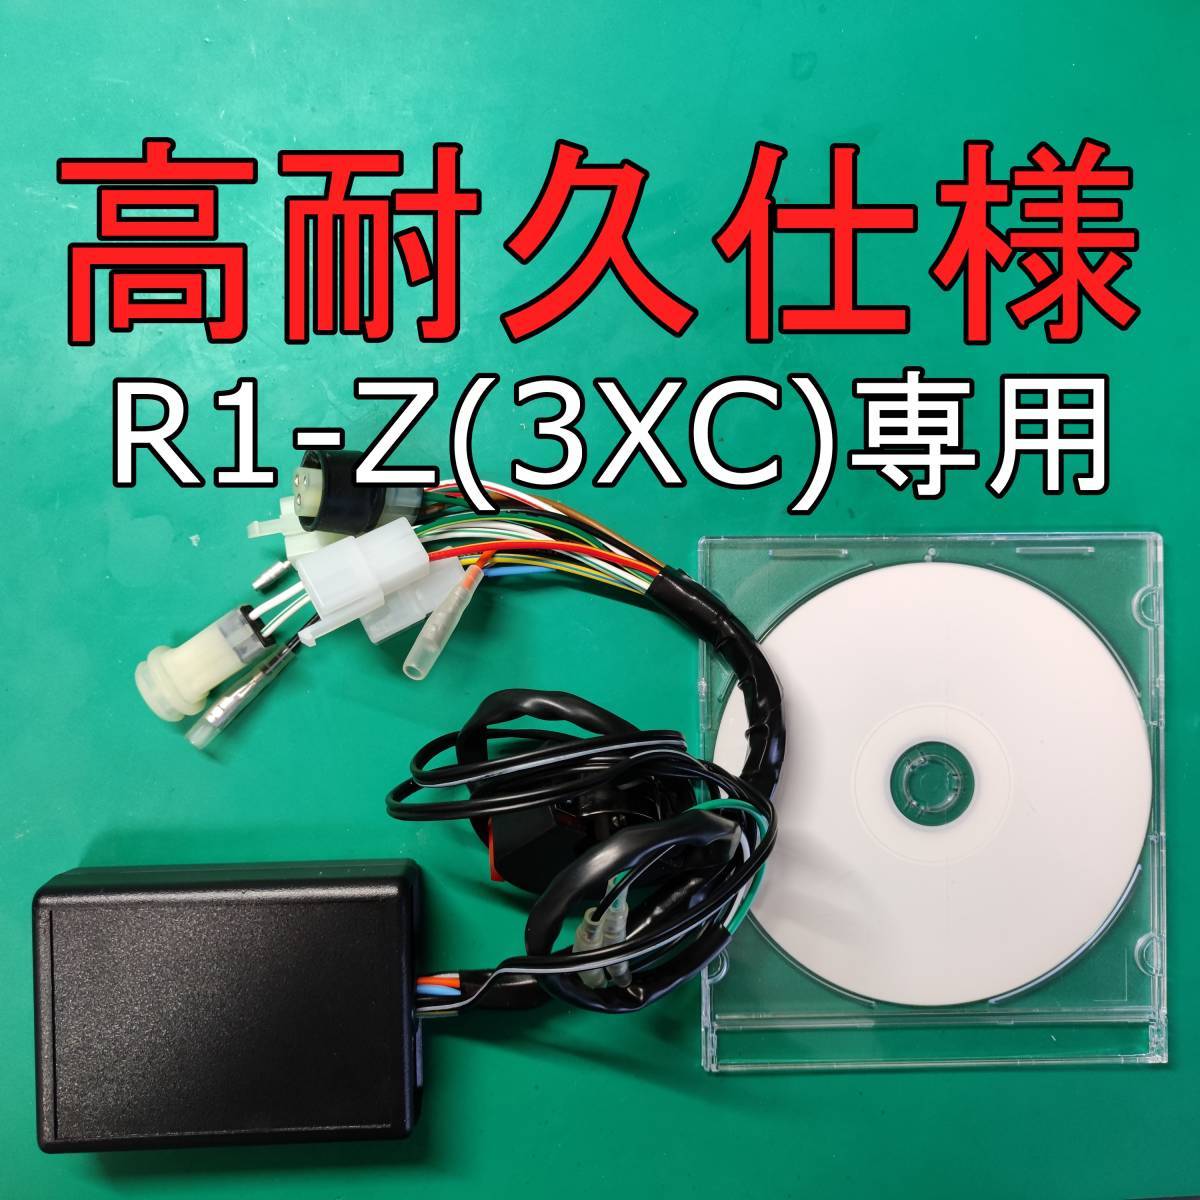 OSR-CDI R1-Z(3XC)専用 高耐久仕様 動作確認済み 商品保証有り セッティングソフト付き の画像1